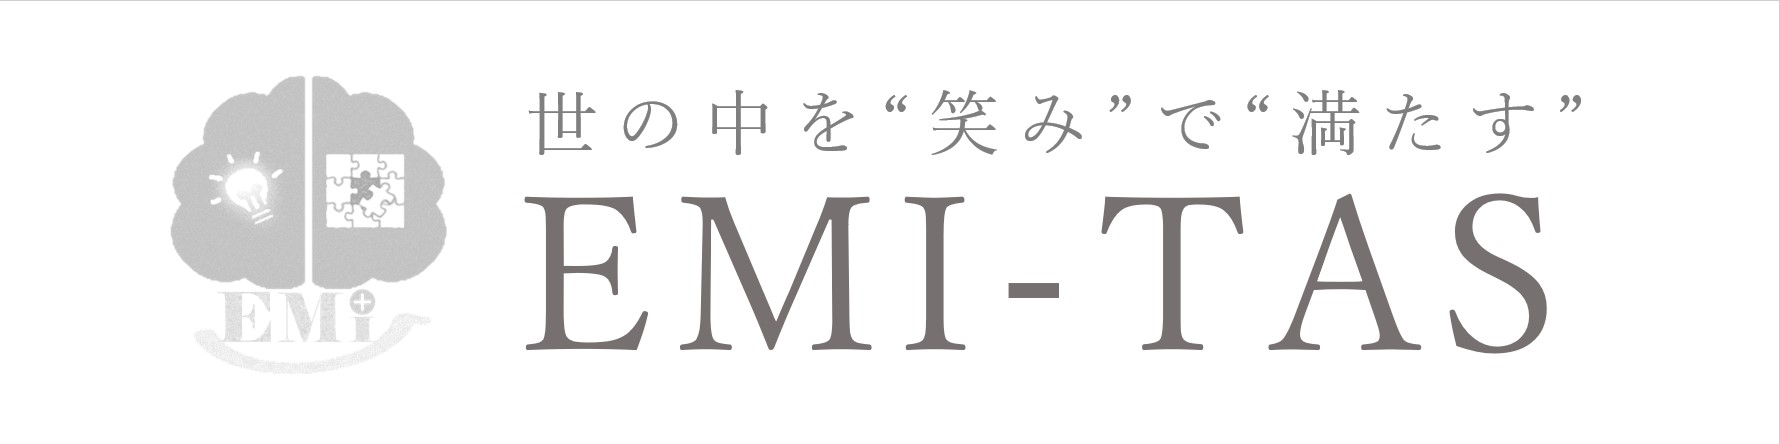 株式会社EMI‐TAS<br />
アンティークレンタル・WEB動画制作<br />
・会員制サロンの運営